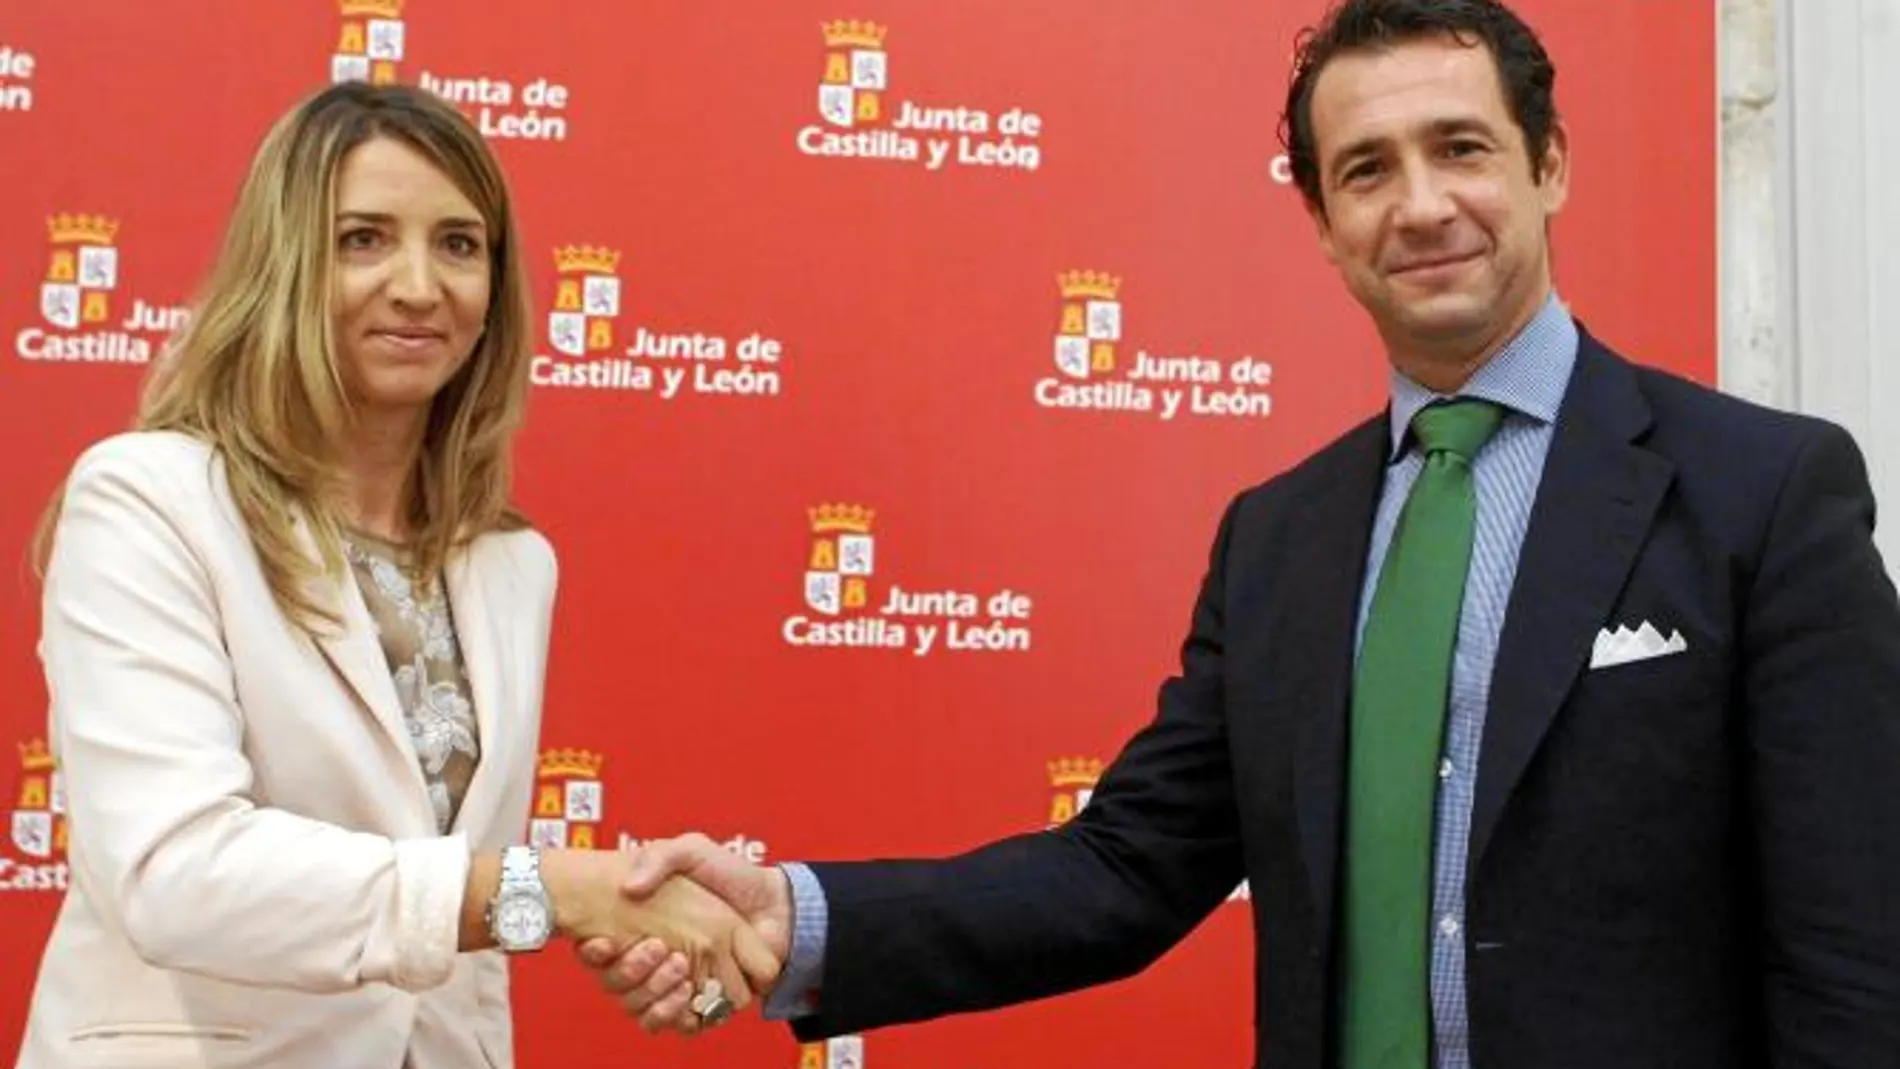 La consejera de Cultura y Turismo, Alicia García, firma el acuerdo con el presidente de Segittur, Antonio López